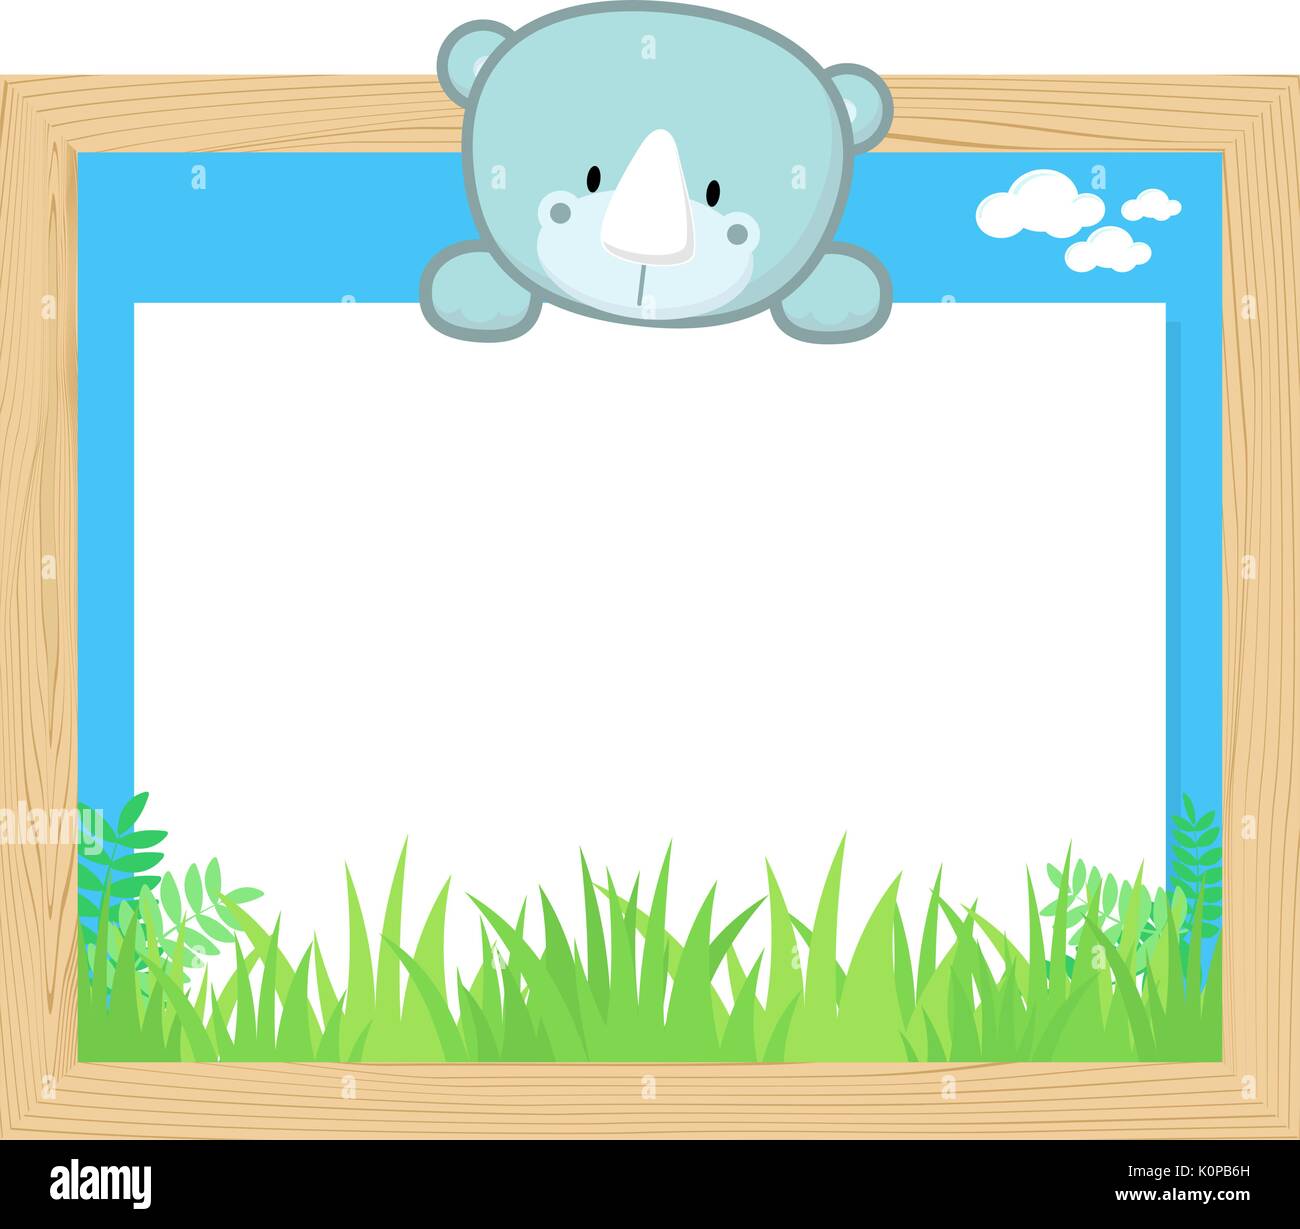 Telaio in legno con simpatici baby rhino e blank board per copiare lo spazio, il design per i bambini Illustrazione Vettoriale